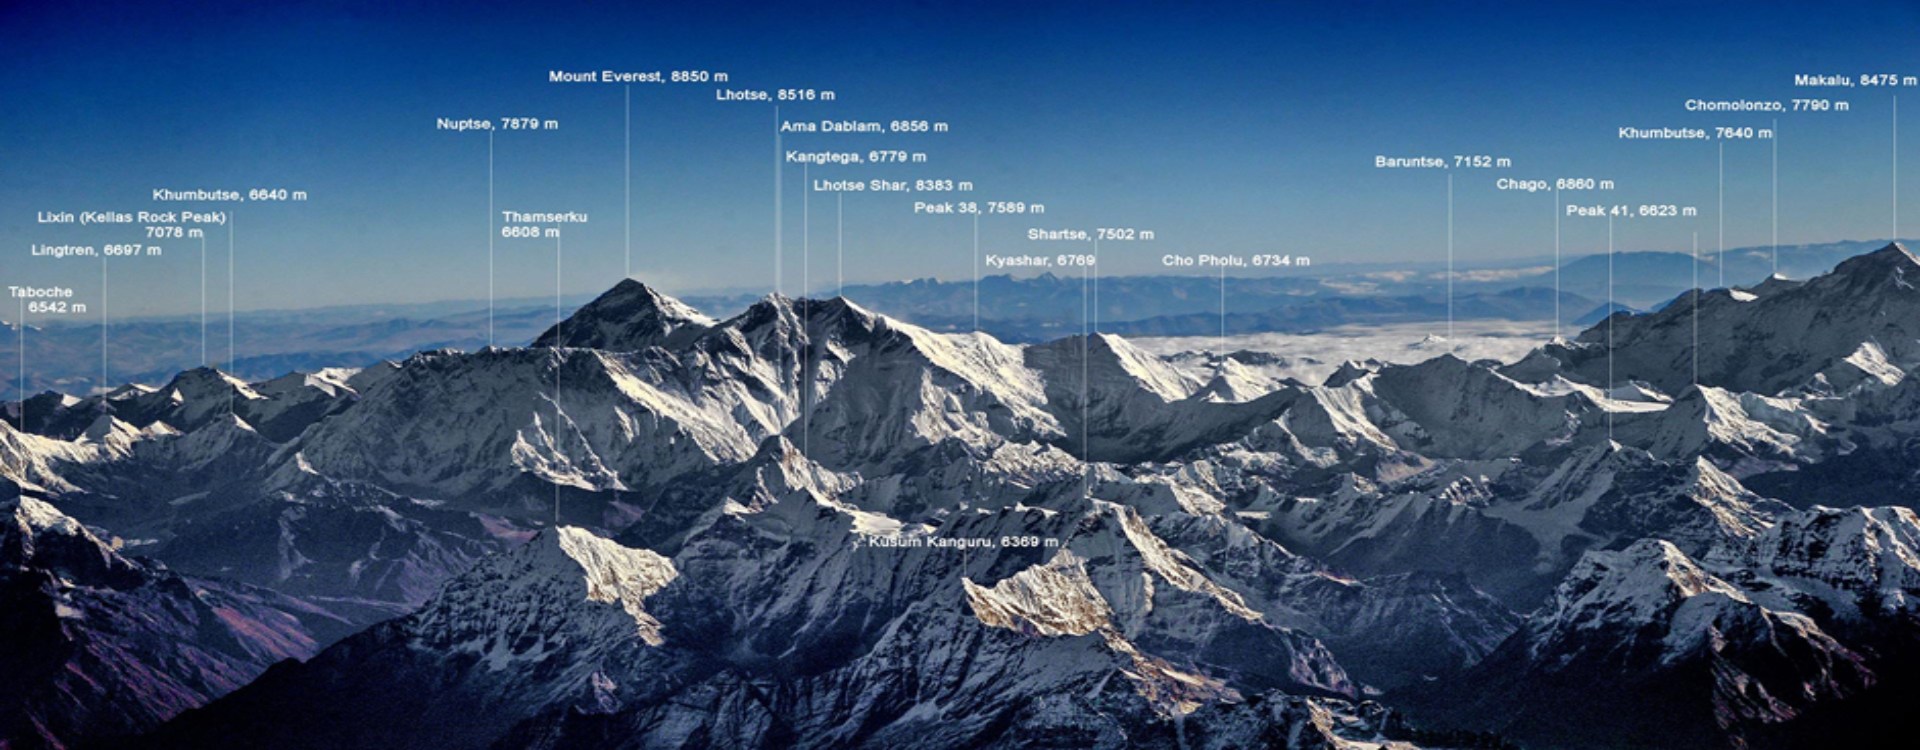 Mount Everest Scenic Mountain Flight